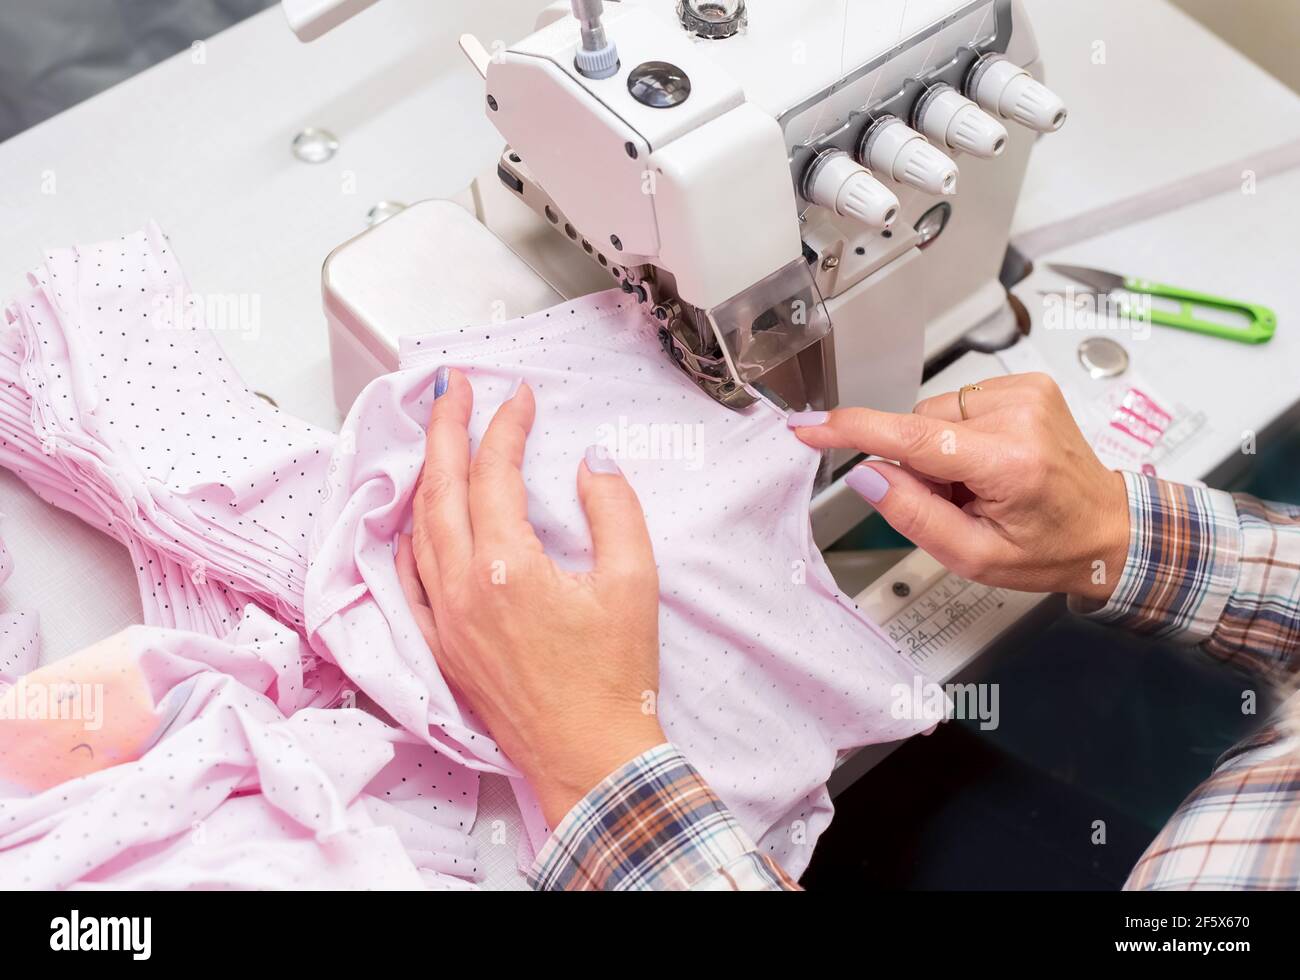 La mano femenina cosiendo ropa de bebé en la máquina overlock, fabricación de ropa. Primer plano del proceso de costura en la fábrica Fotografía de stock -